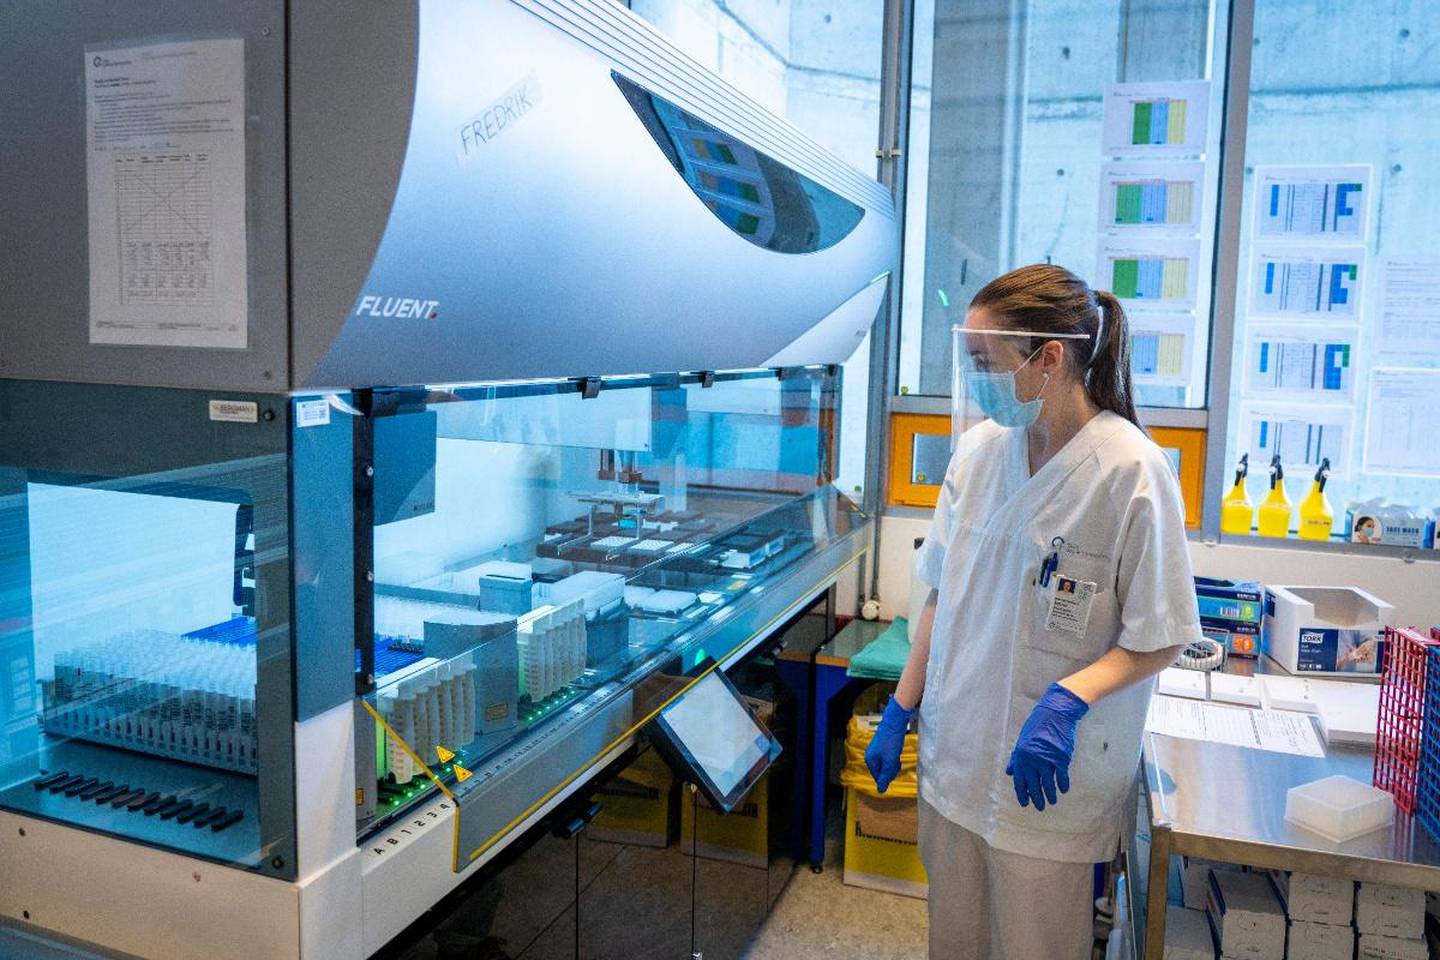 Bildet er av en laboratorie-ansatt som står ved en maskin. Den blir brukt til å sjekke prøver for korona. Det er mange prøver inne i maskinen.